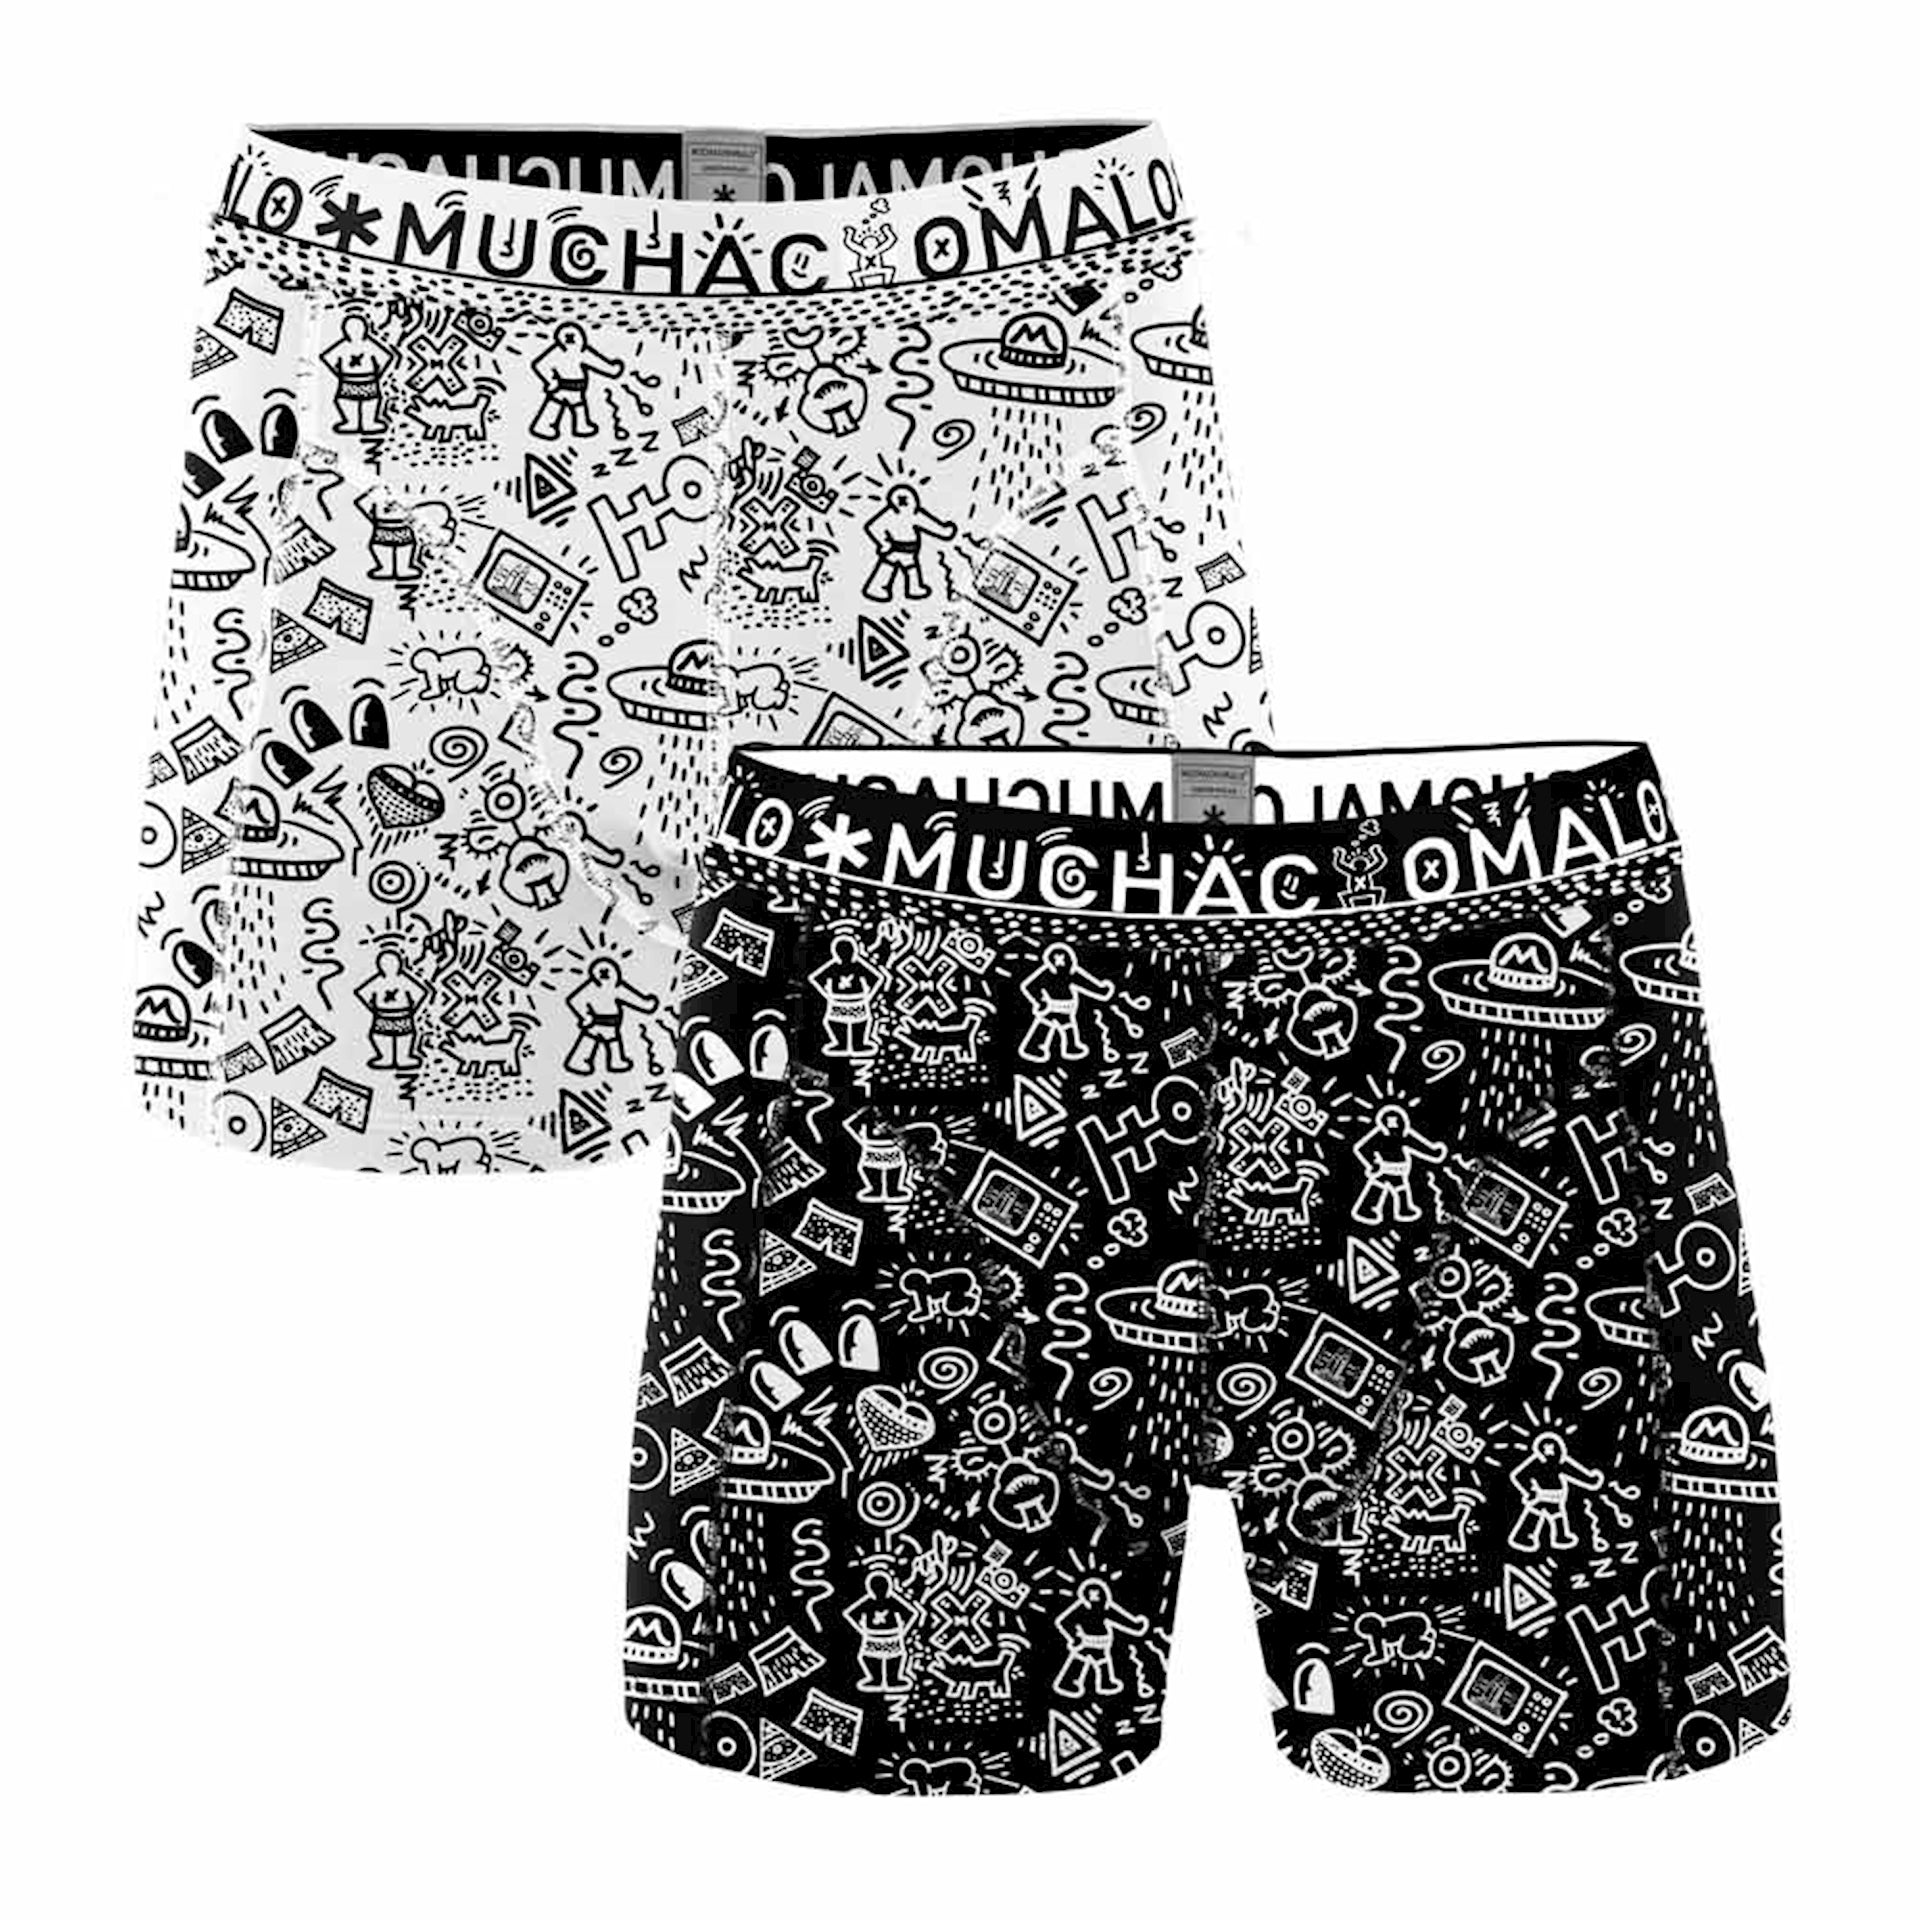 Muchachomalo 2-pack Underwear Iconic Art